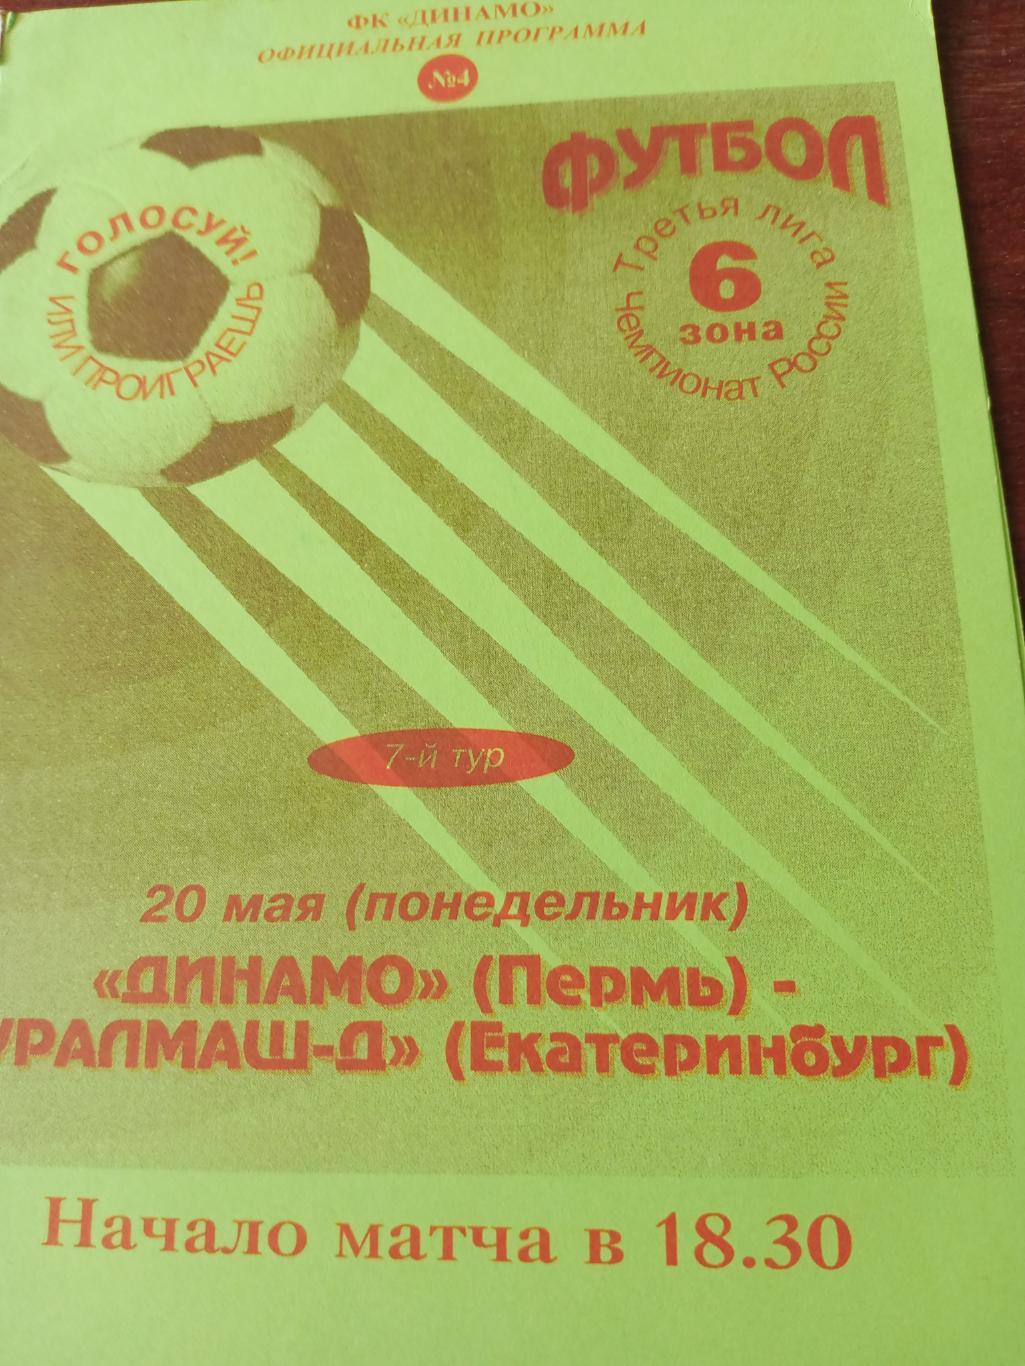 Динамо Пермь - Уралмаш-Д Екатеринбург. 20 мая 1996 год